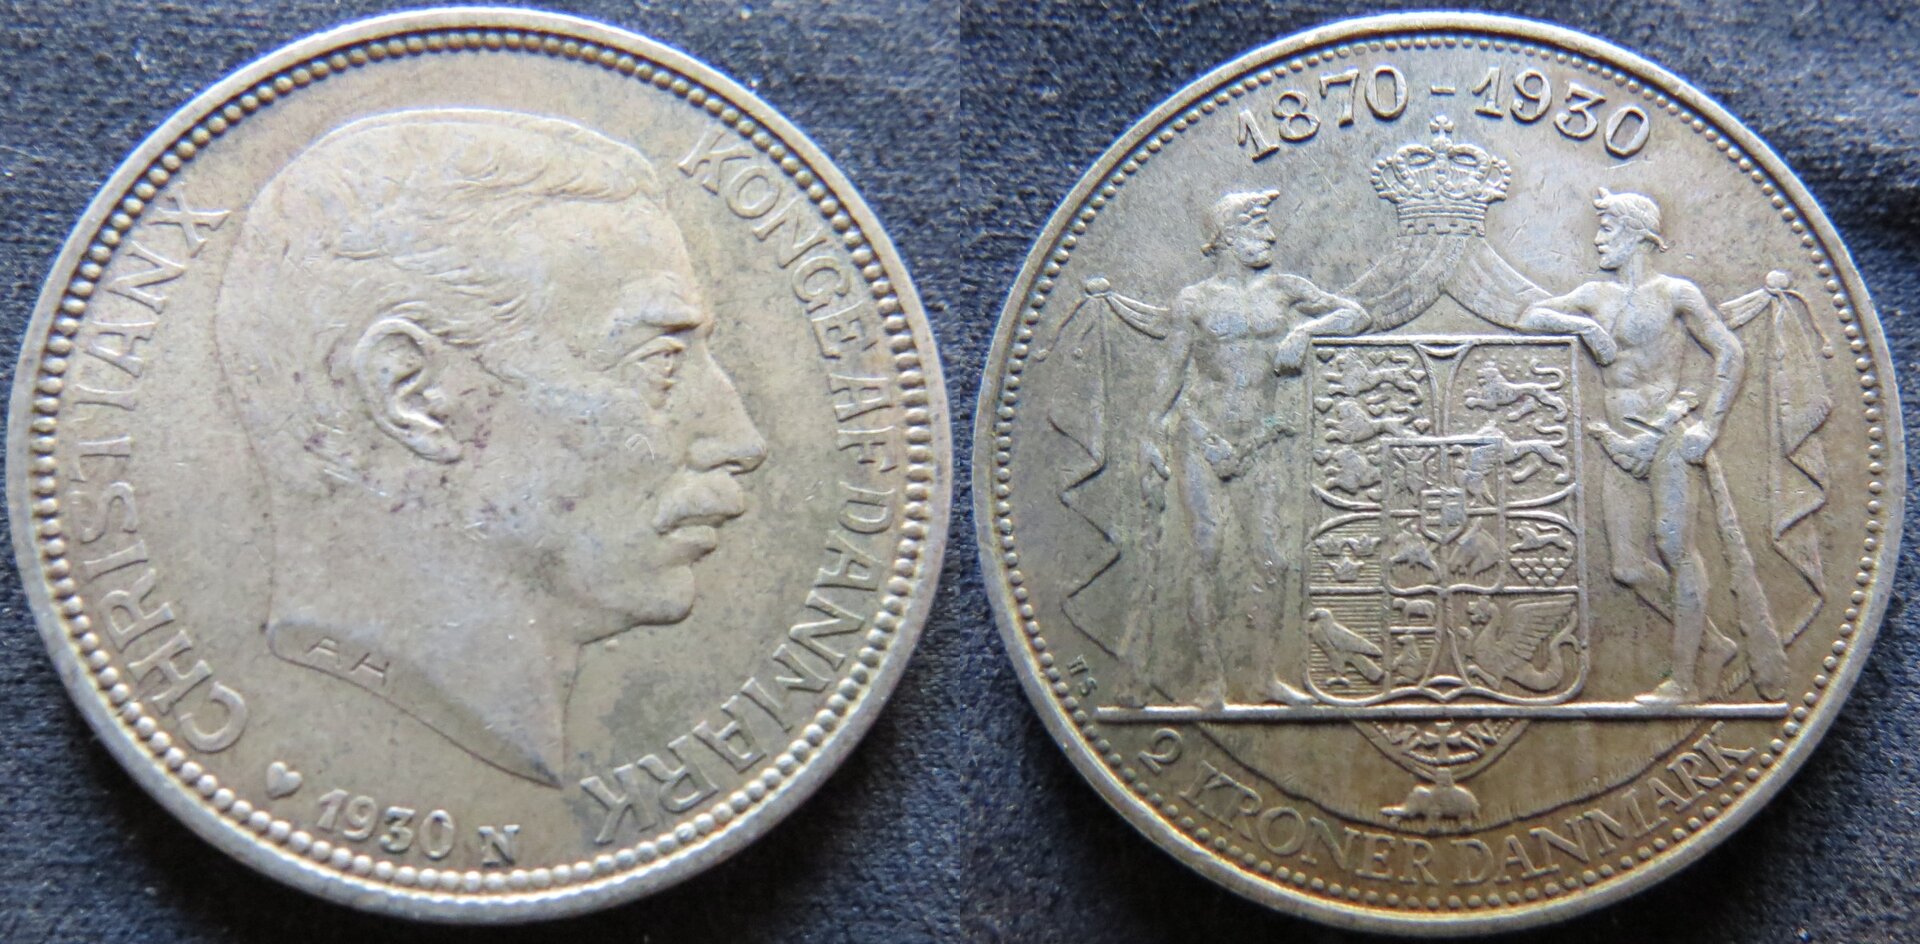 Denmark 2 Krone 1930.jpg